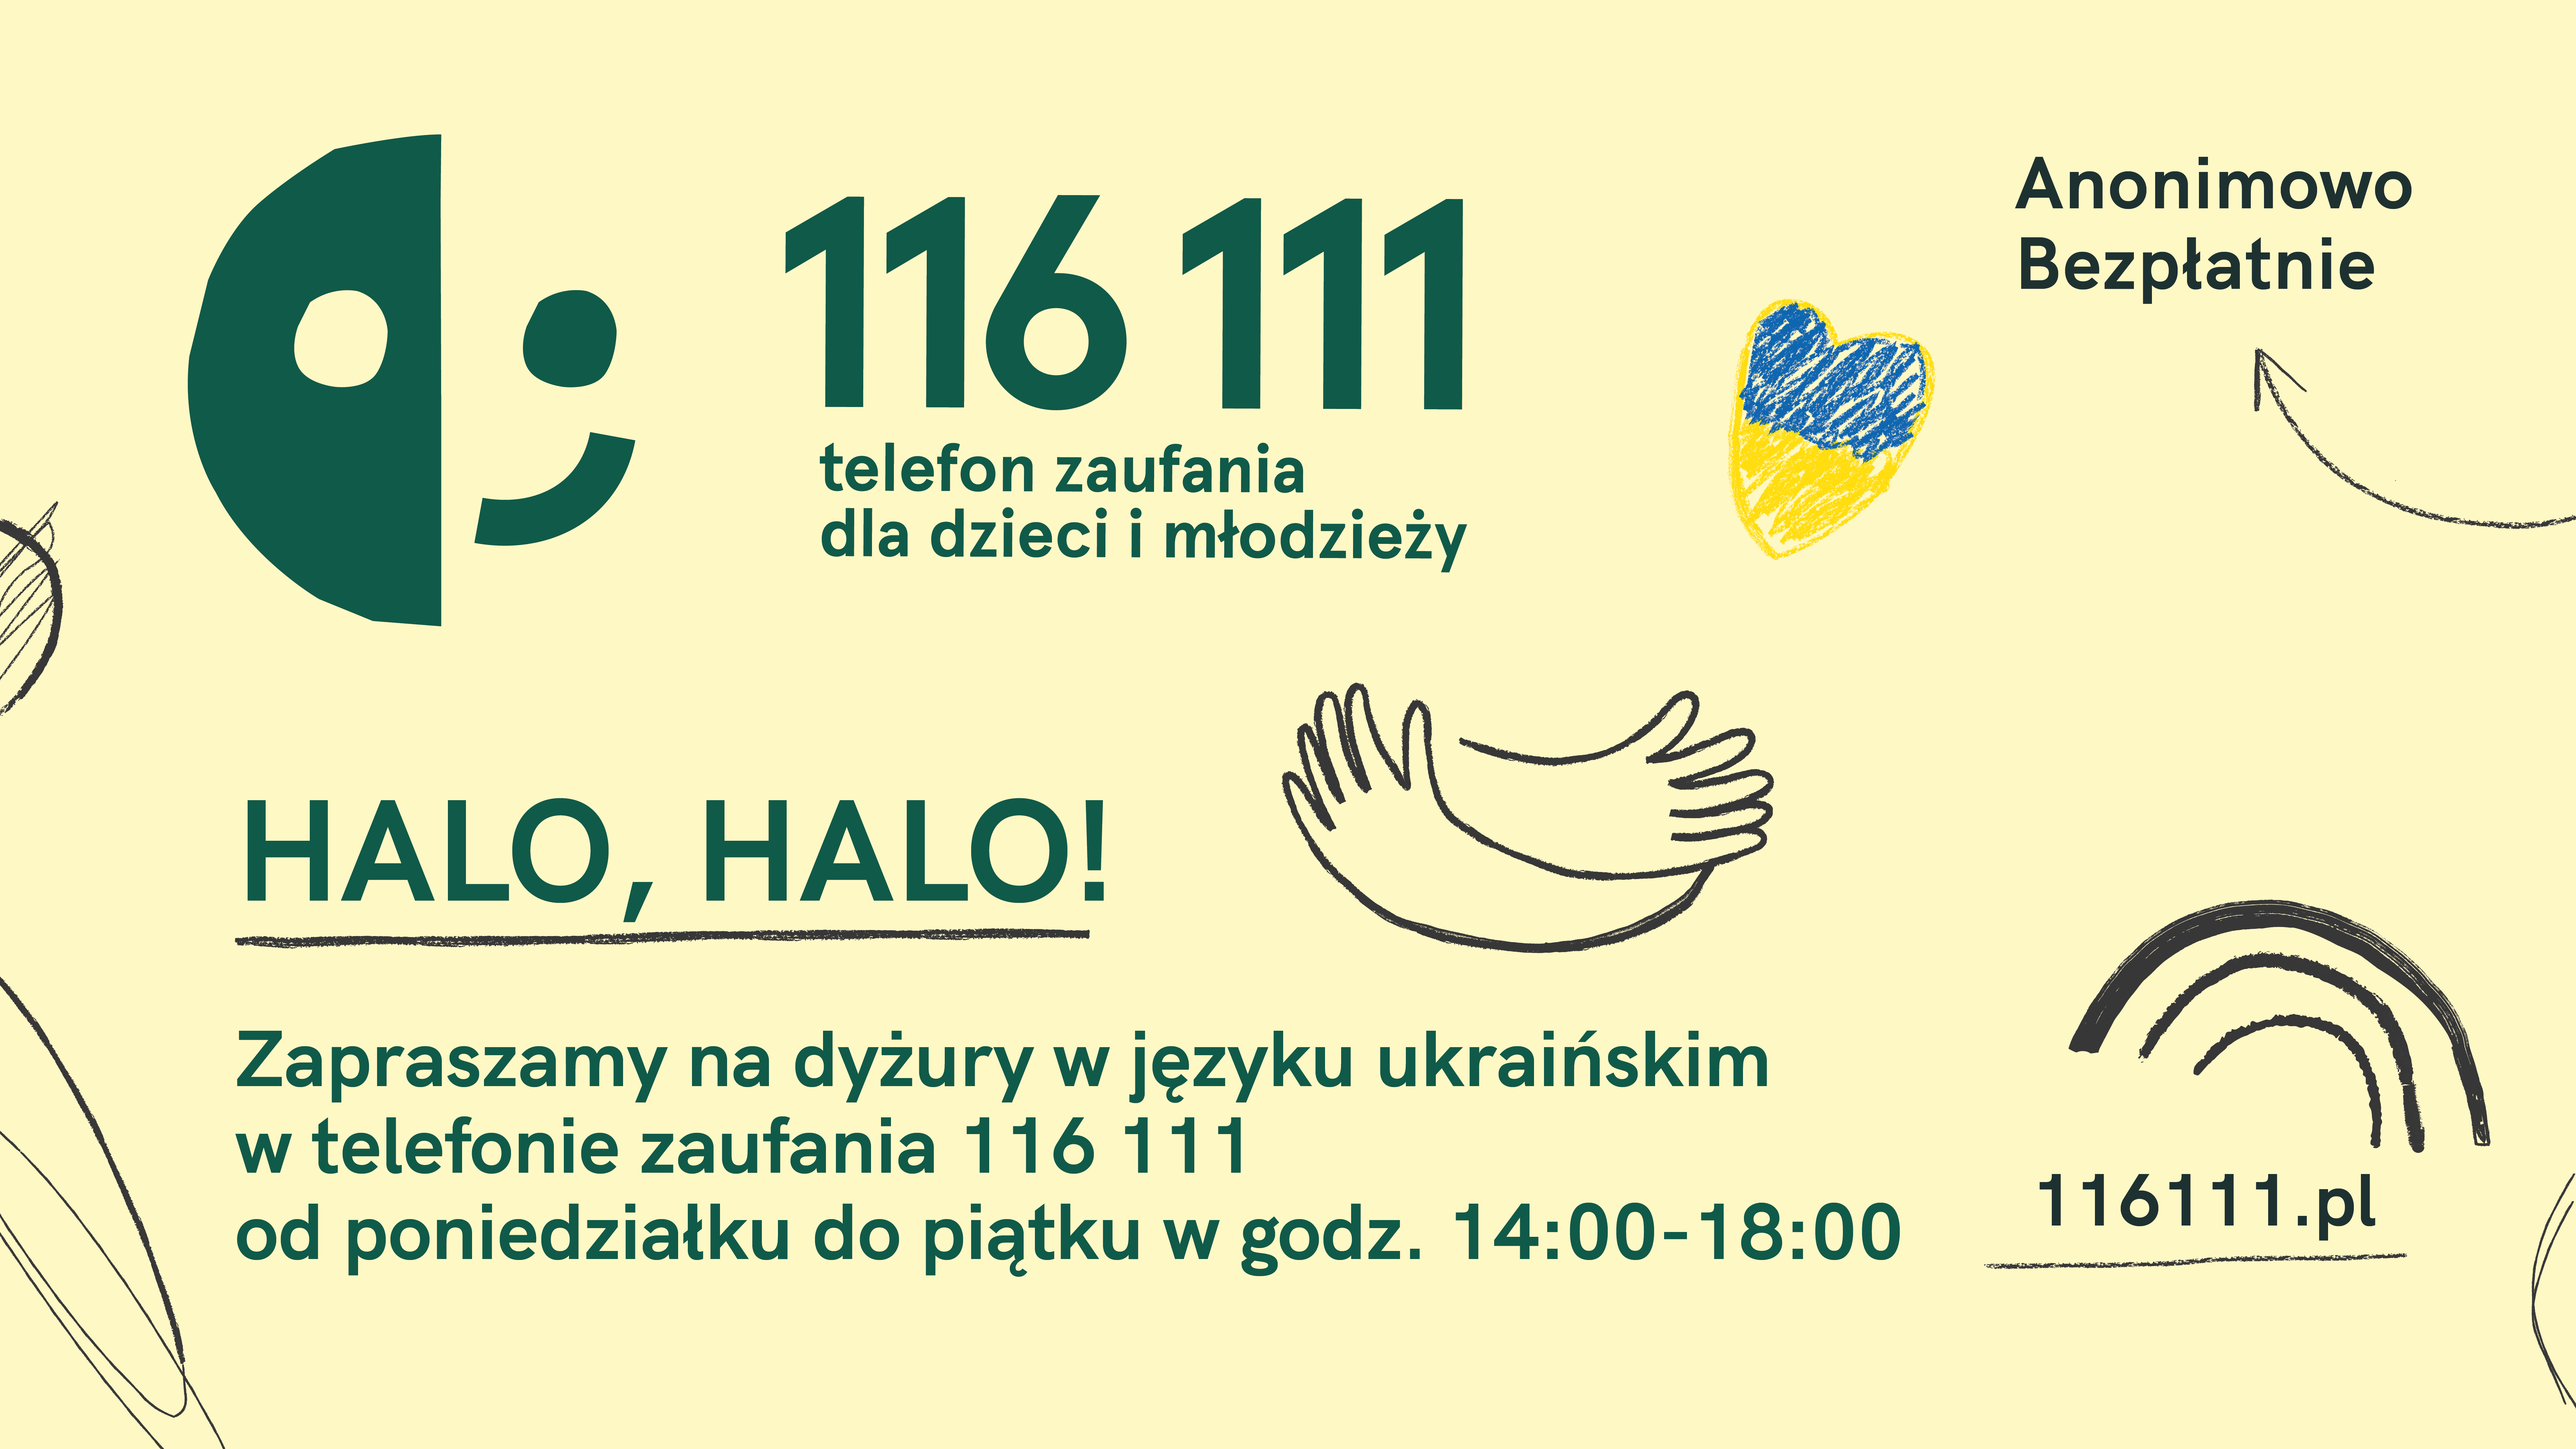 wizytówka w języku polskim telefonu zaufania dla dzieci i młodzieży pod numerem tel. 116 111